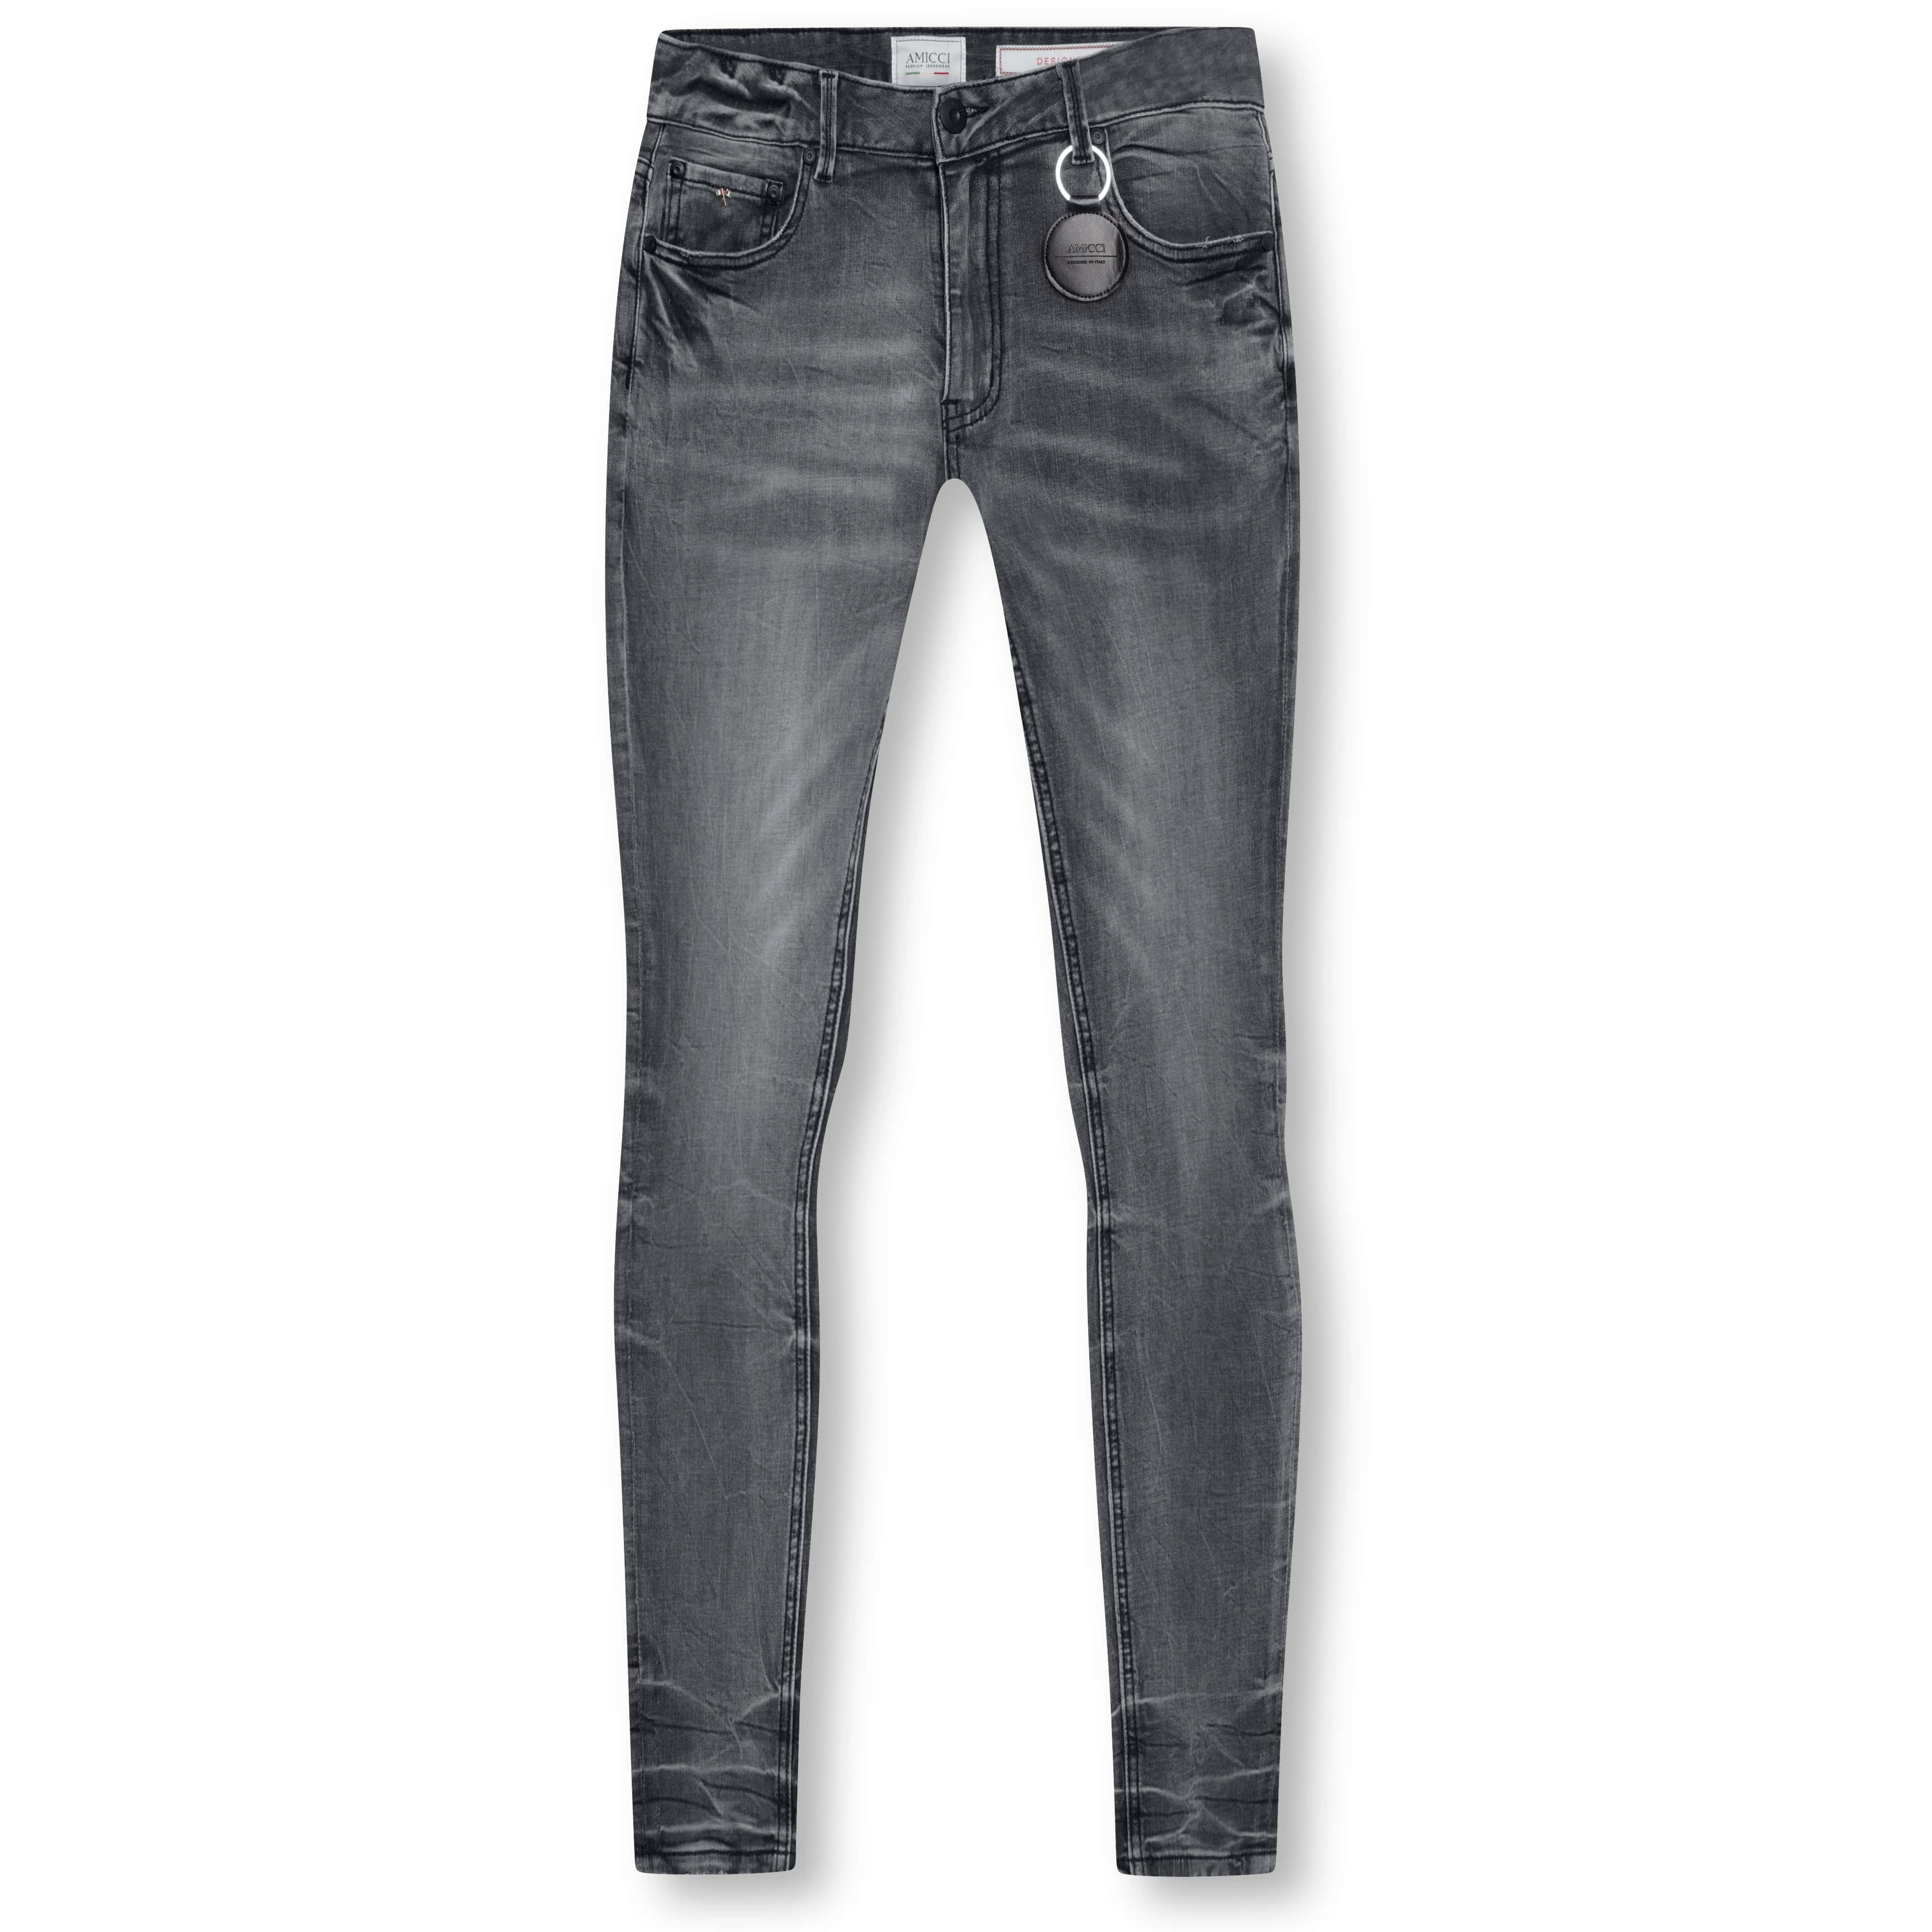 Amicci Roma Grey - Premium Jeans Denim Fit Slim